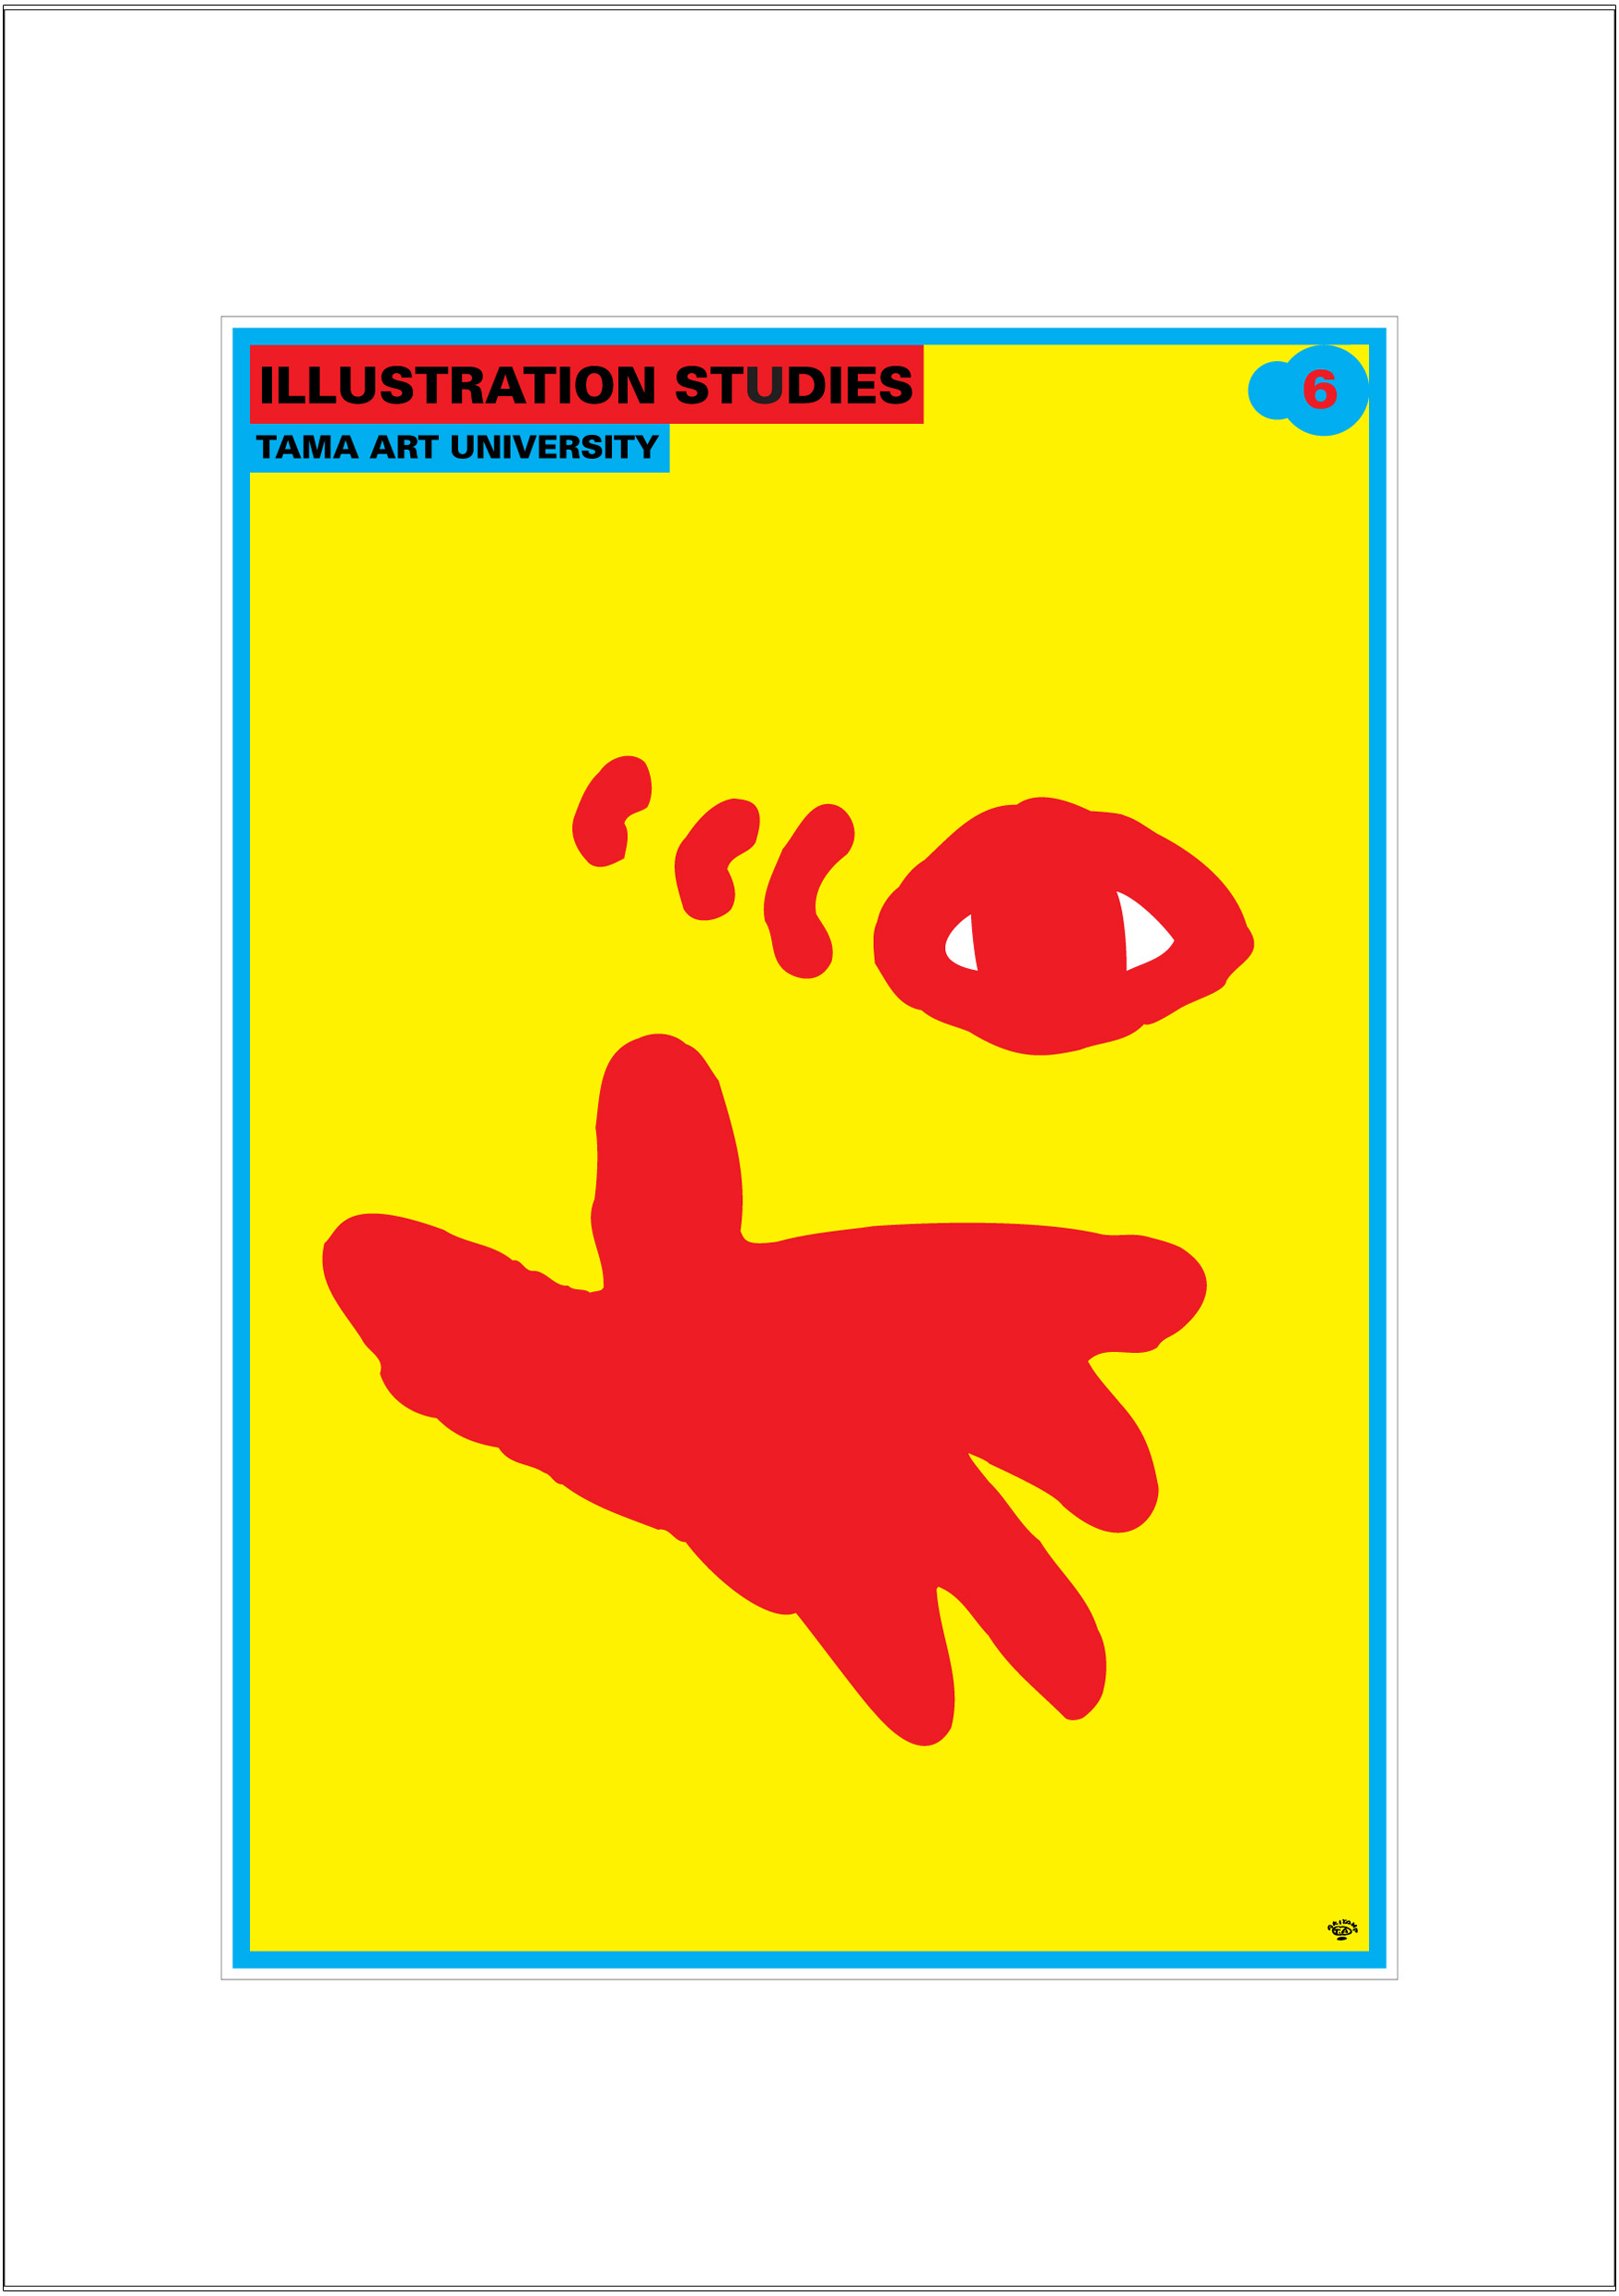 ポスターアーティスト秋山孝が2002年に制作したアートカード「アートカード ポスター 2002 03」